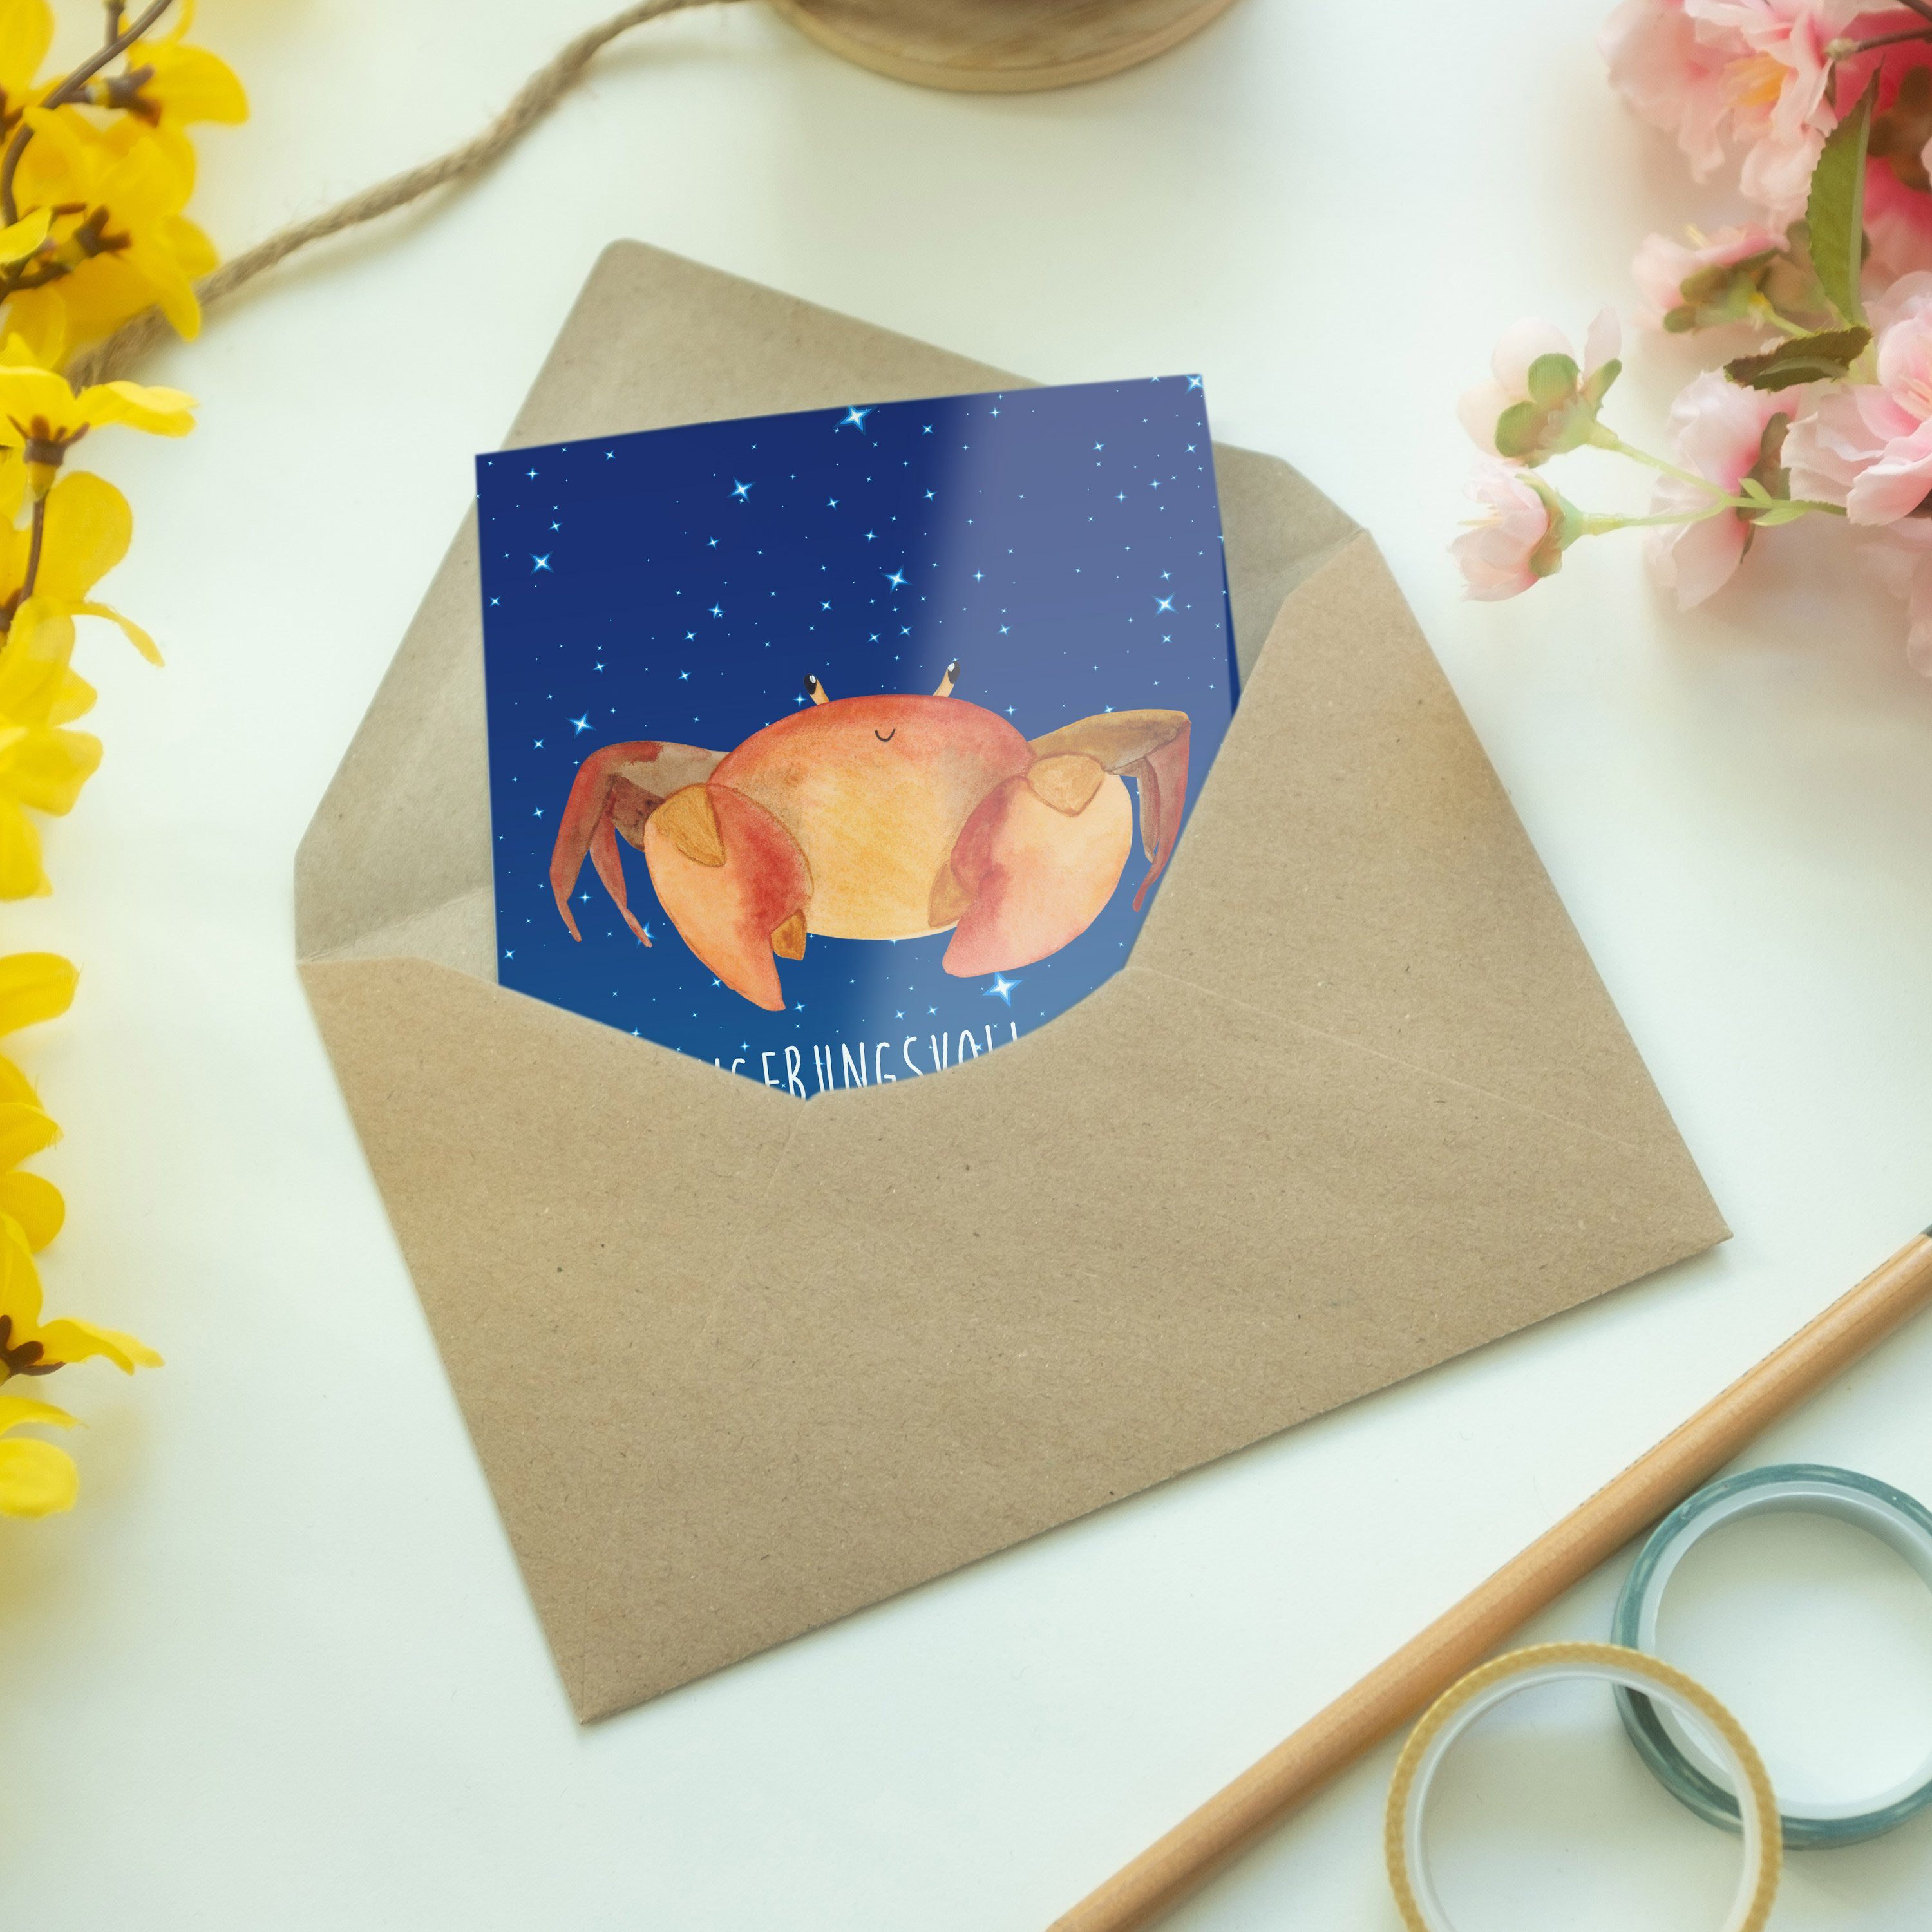 Mr. & Mrs. Panda Grußkarte Geburtstagskarte - Geschenk, Sternenhimmel Krebs - Sternzeichen Blau